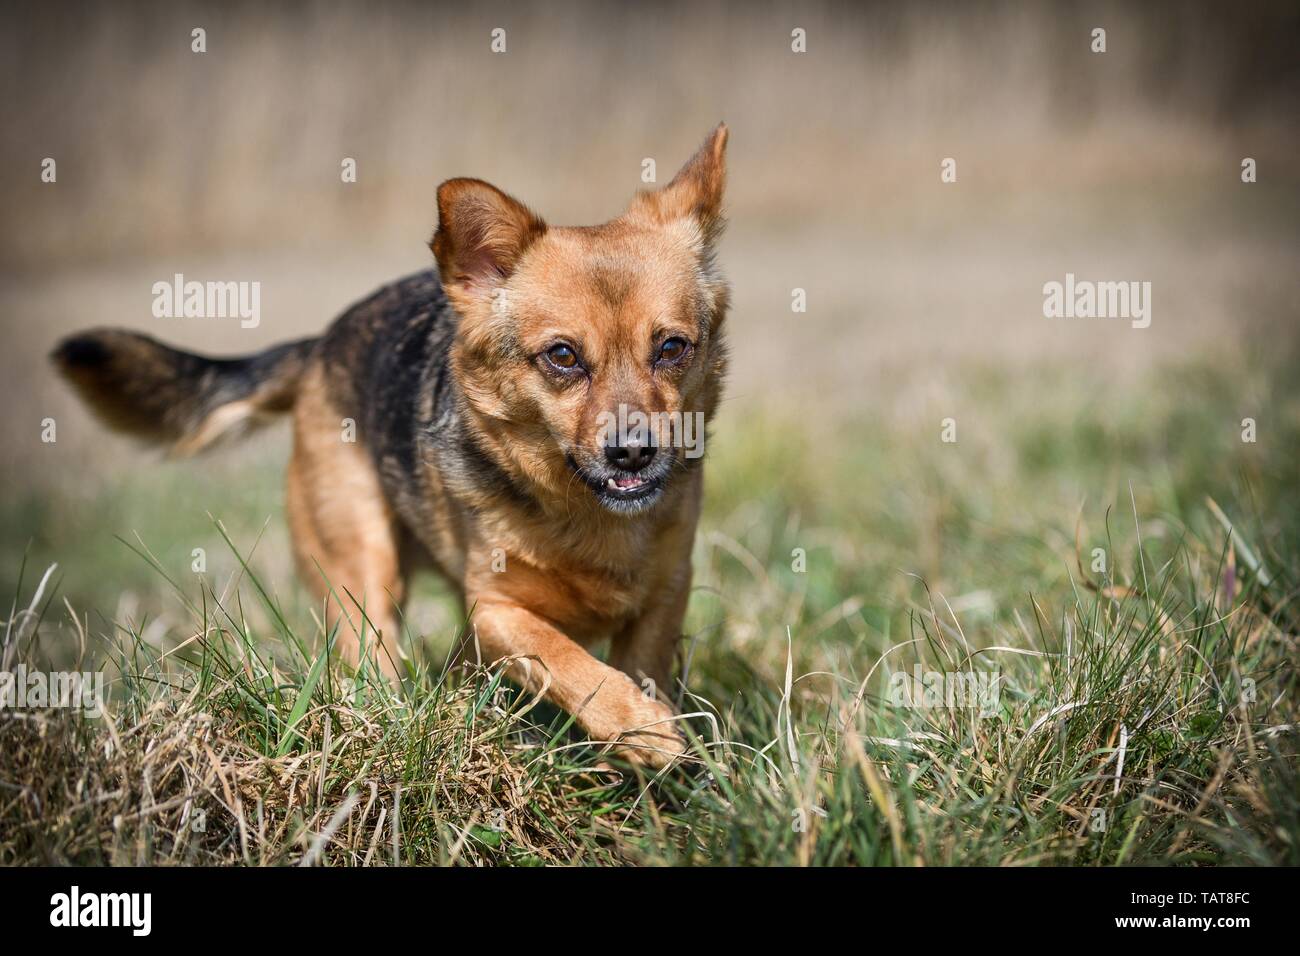 Hund mit unterbiss Stockfotografie - Alamy